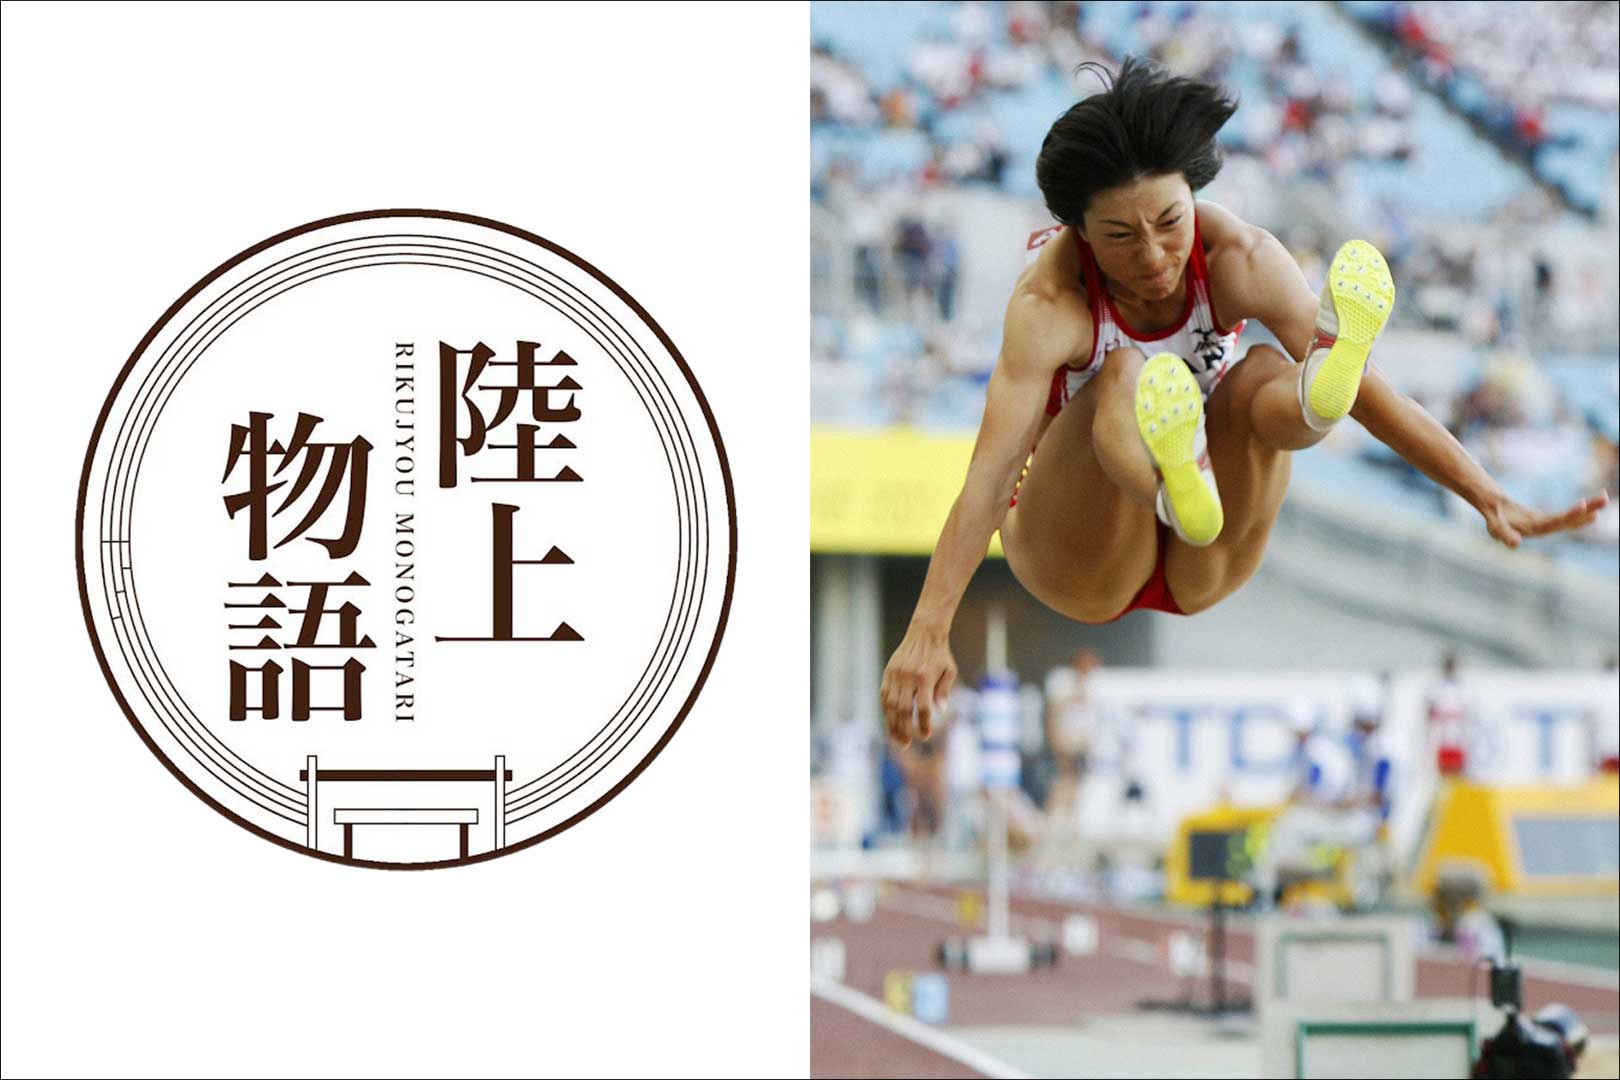 陸上物語file 14 中田有紀 七種競技で唯一オリンピックを知る女性 スポーツで本気のキッカケを見つけるメディアgrows